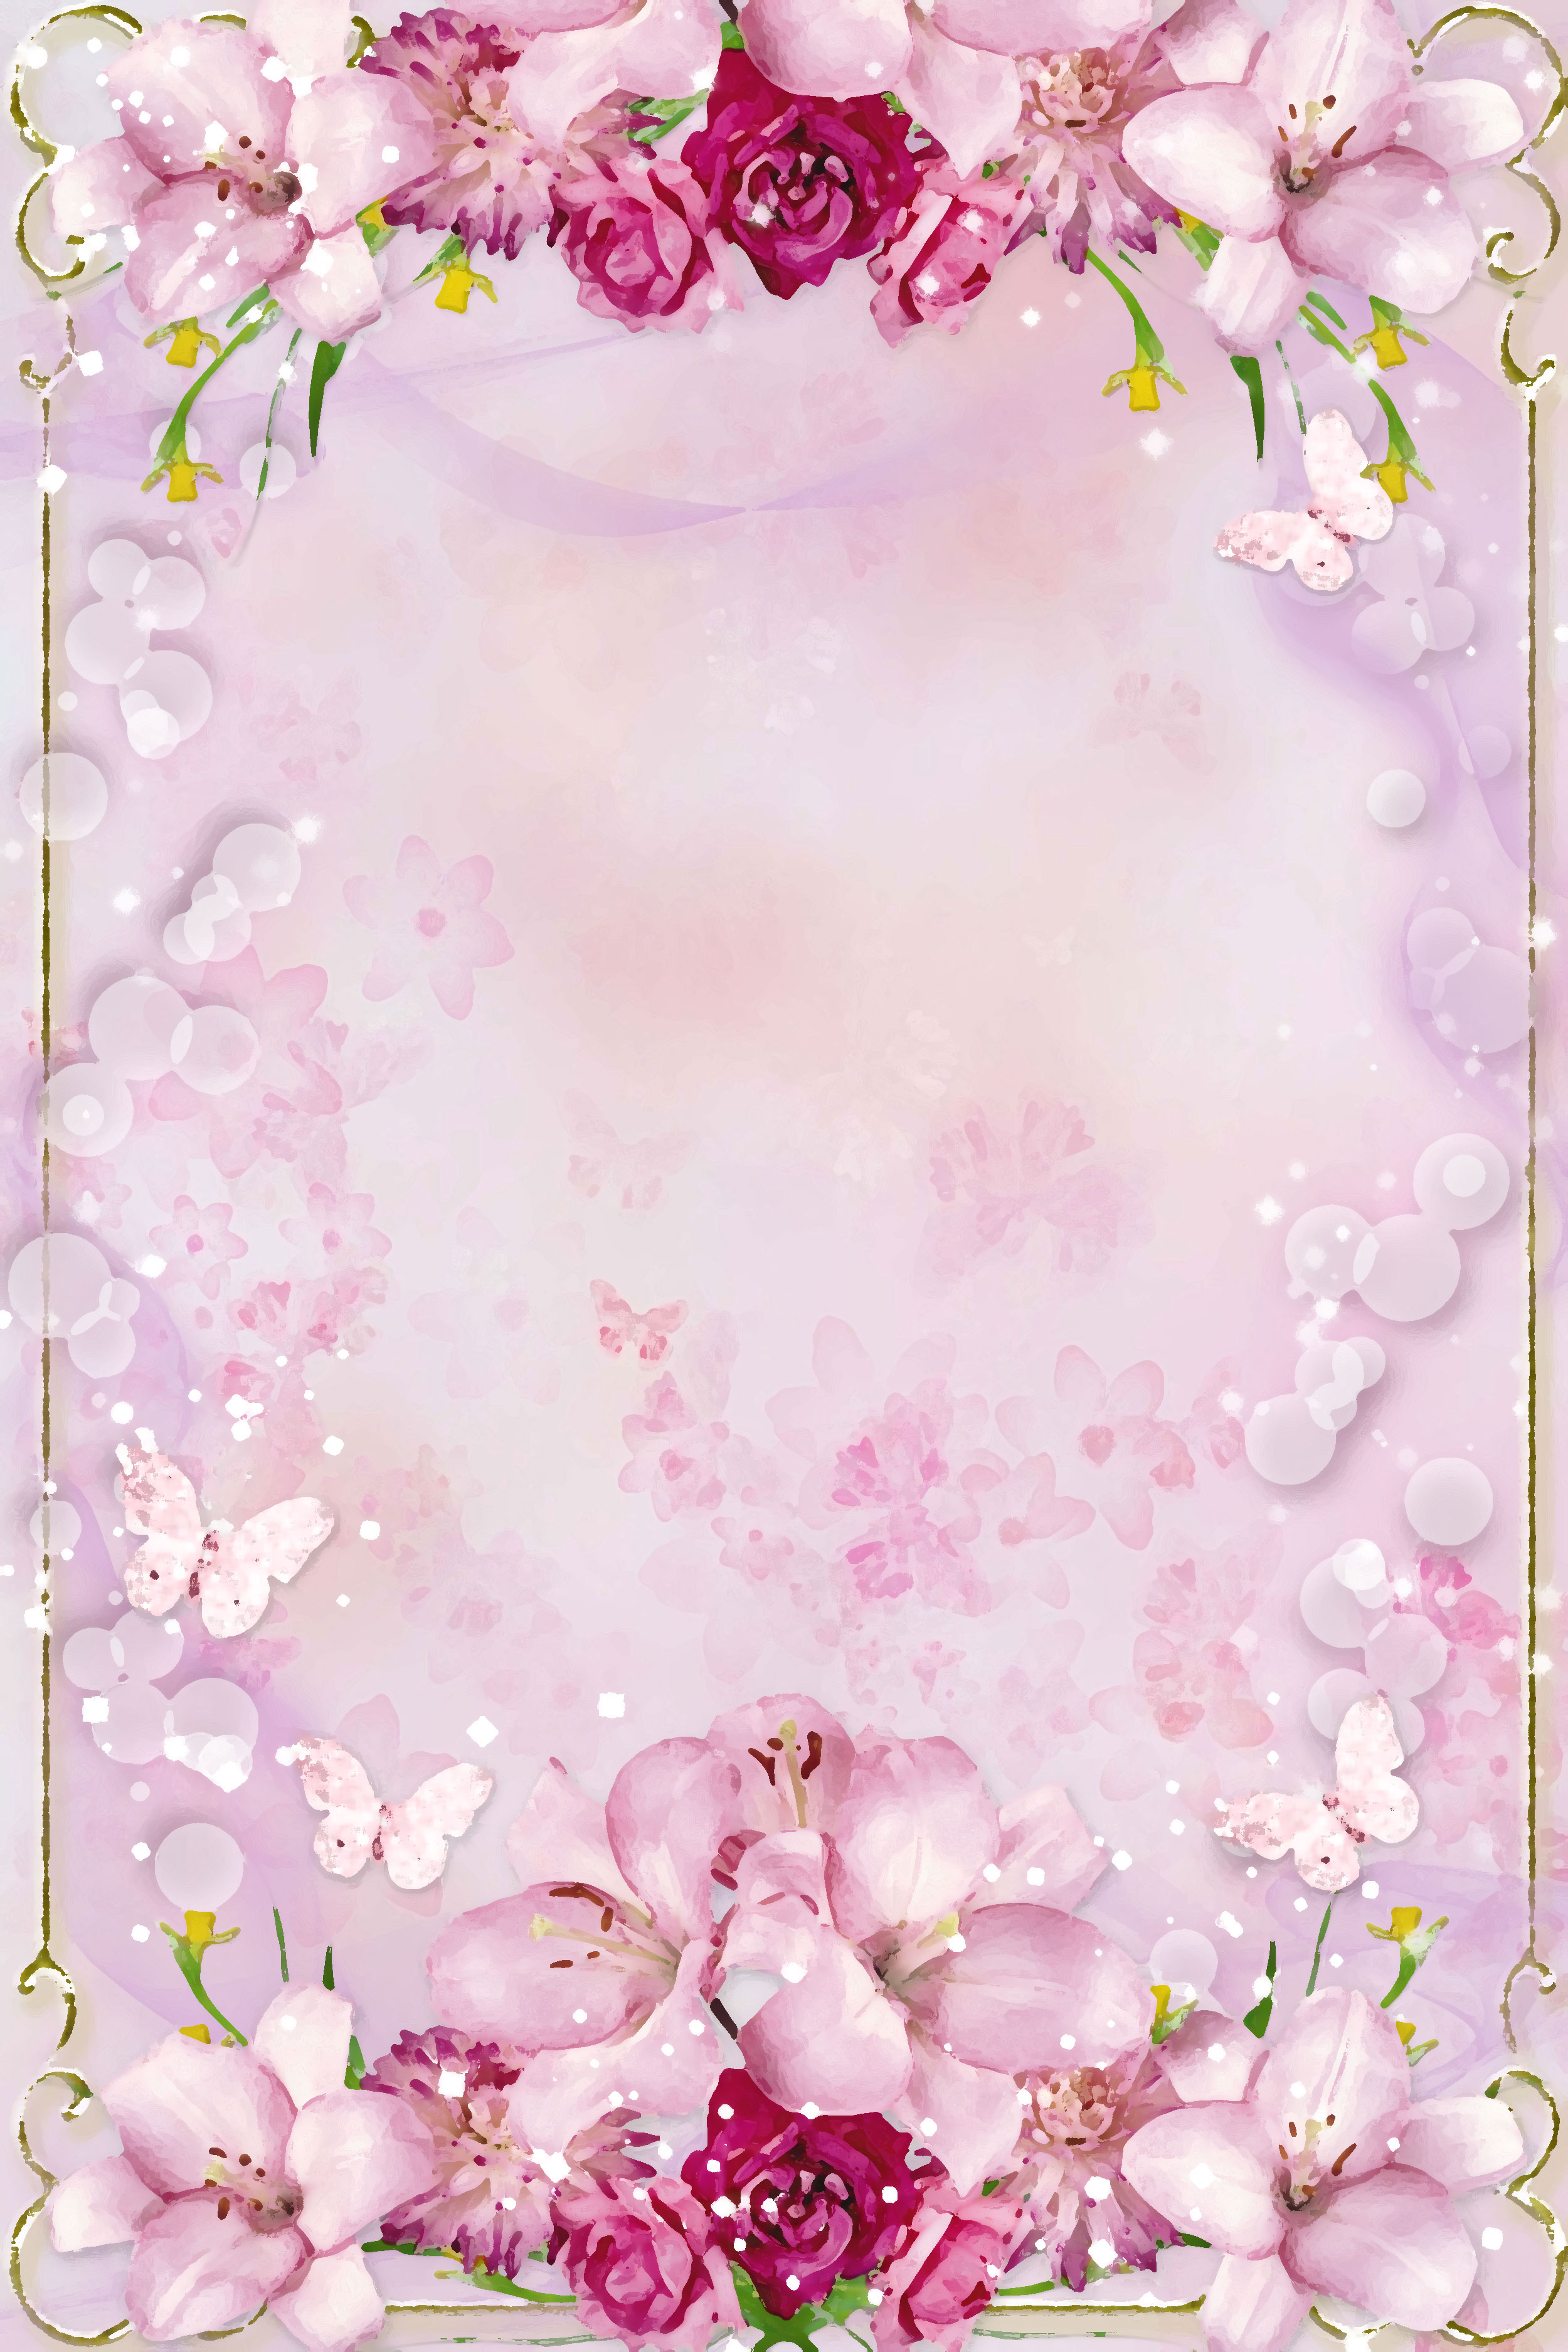 百合 ゆり の画像 イラスト フリー素材 壁紙 背景no 216 ピンク 赤紫 蝶 光粒